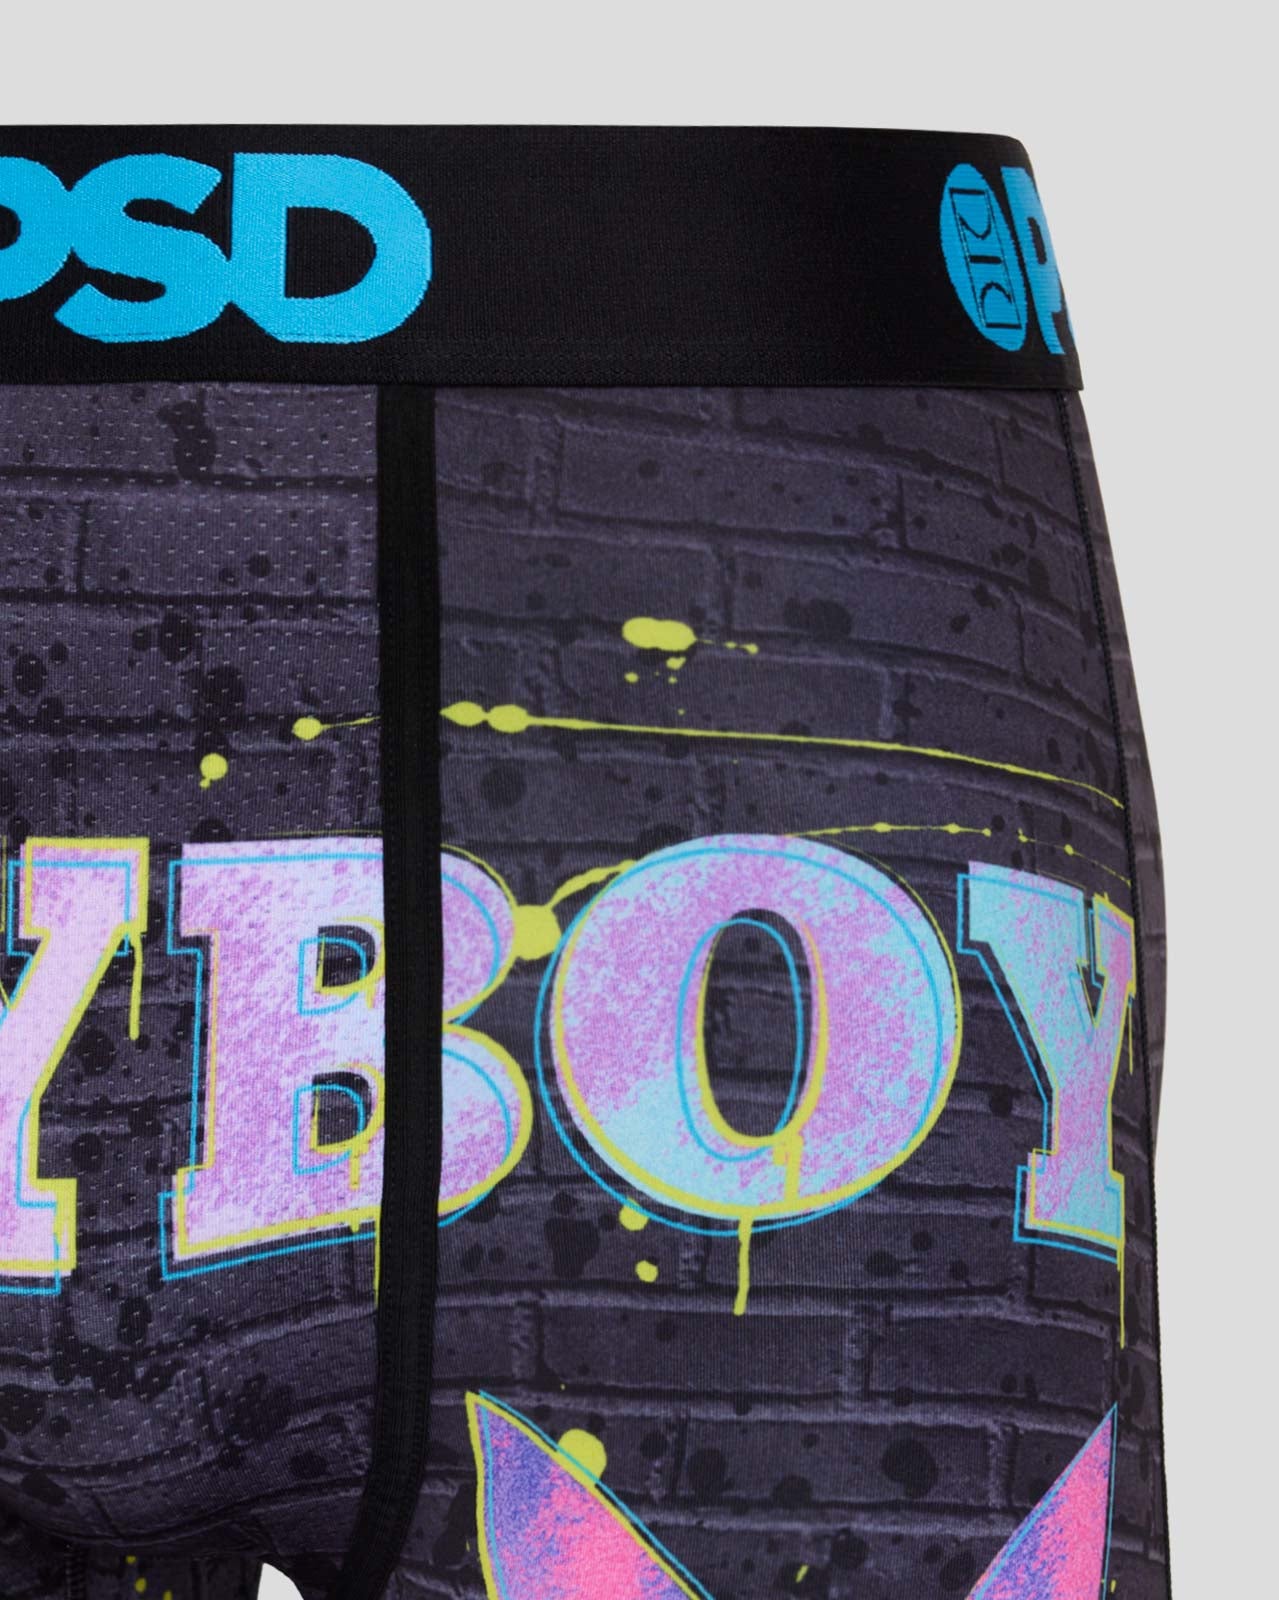 PSD Playboy Cover Girls Boxer Brief Underwear– Mainland Skate & Surf